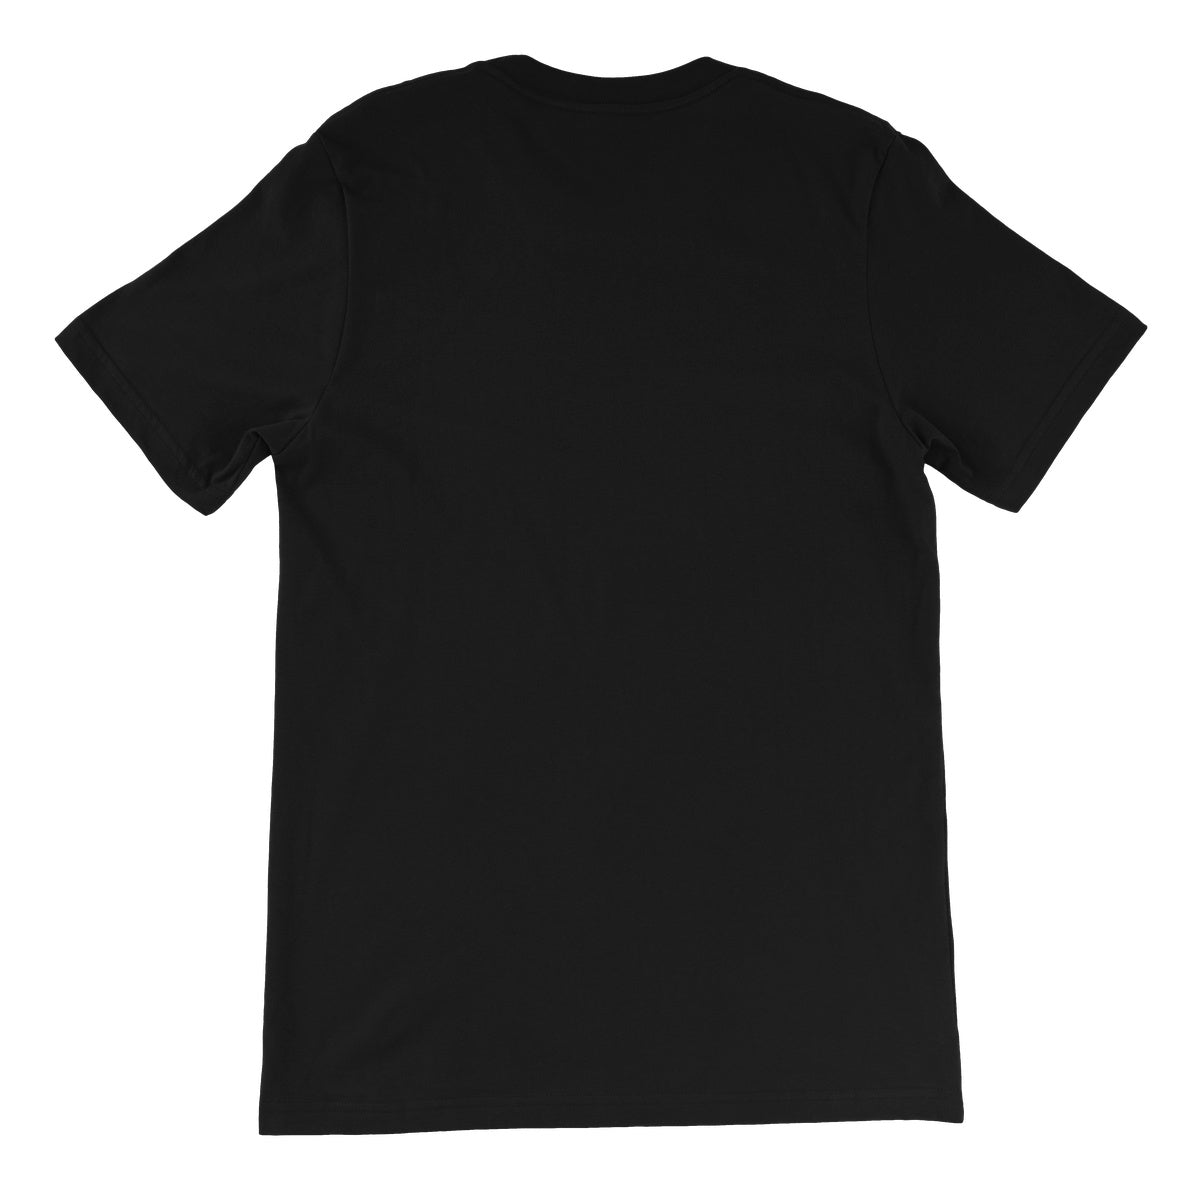 TNT Extreme Mighty Extreme Unisex Short Sleeve T-Shirt